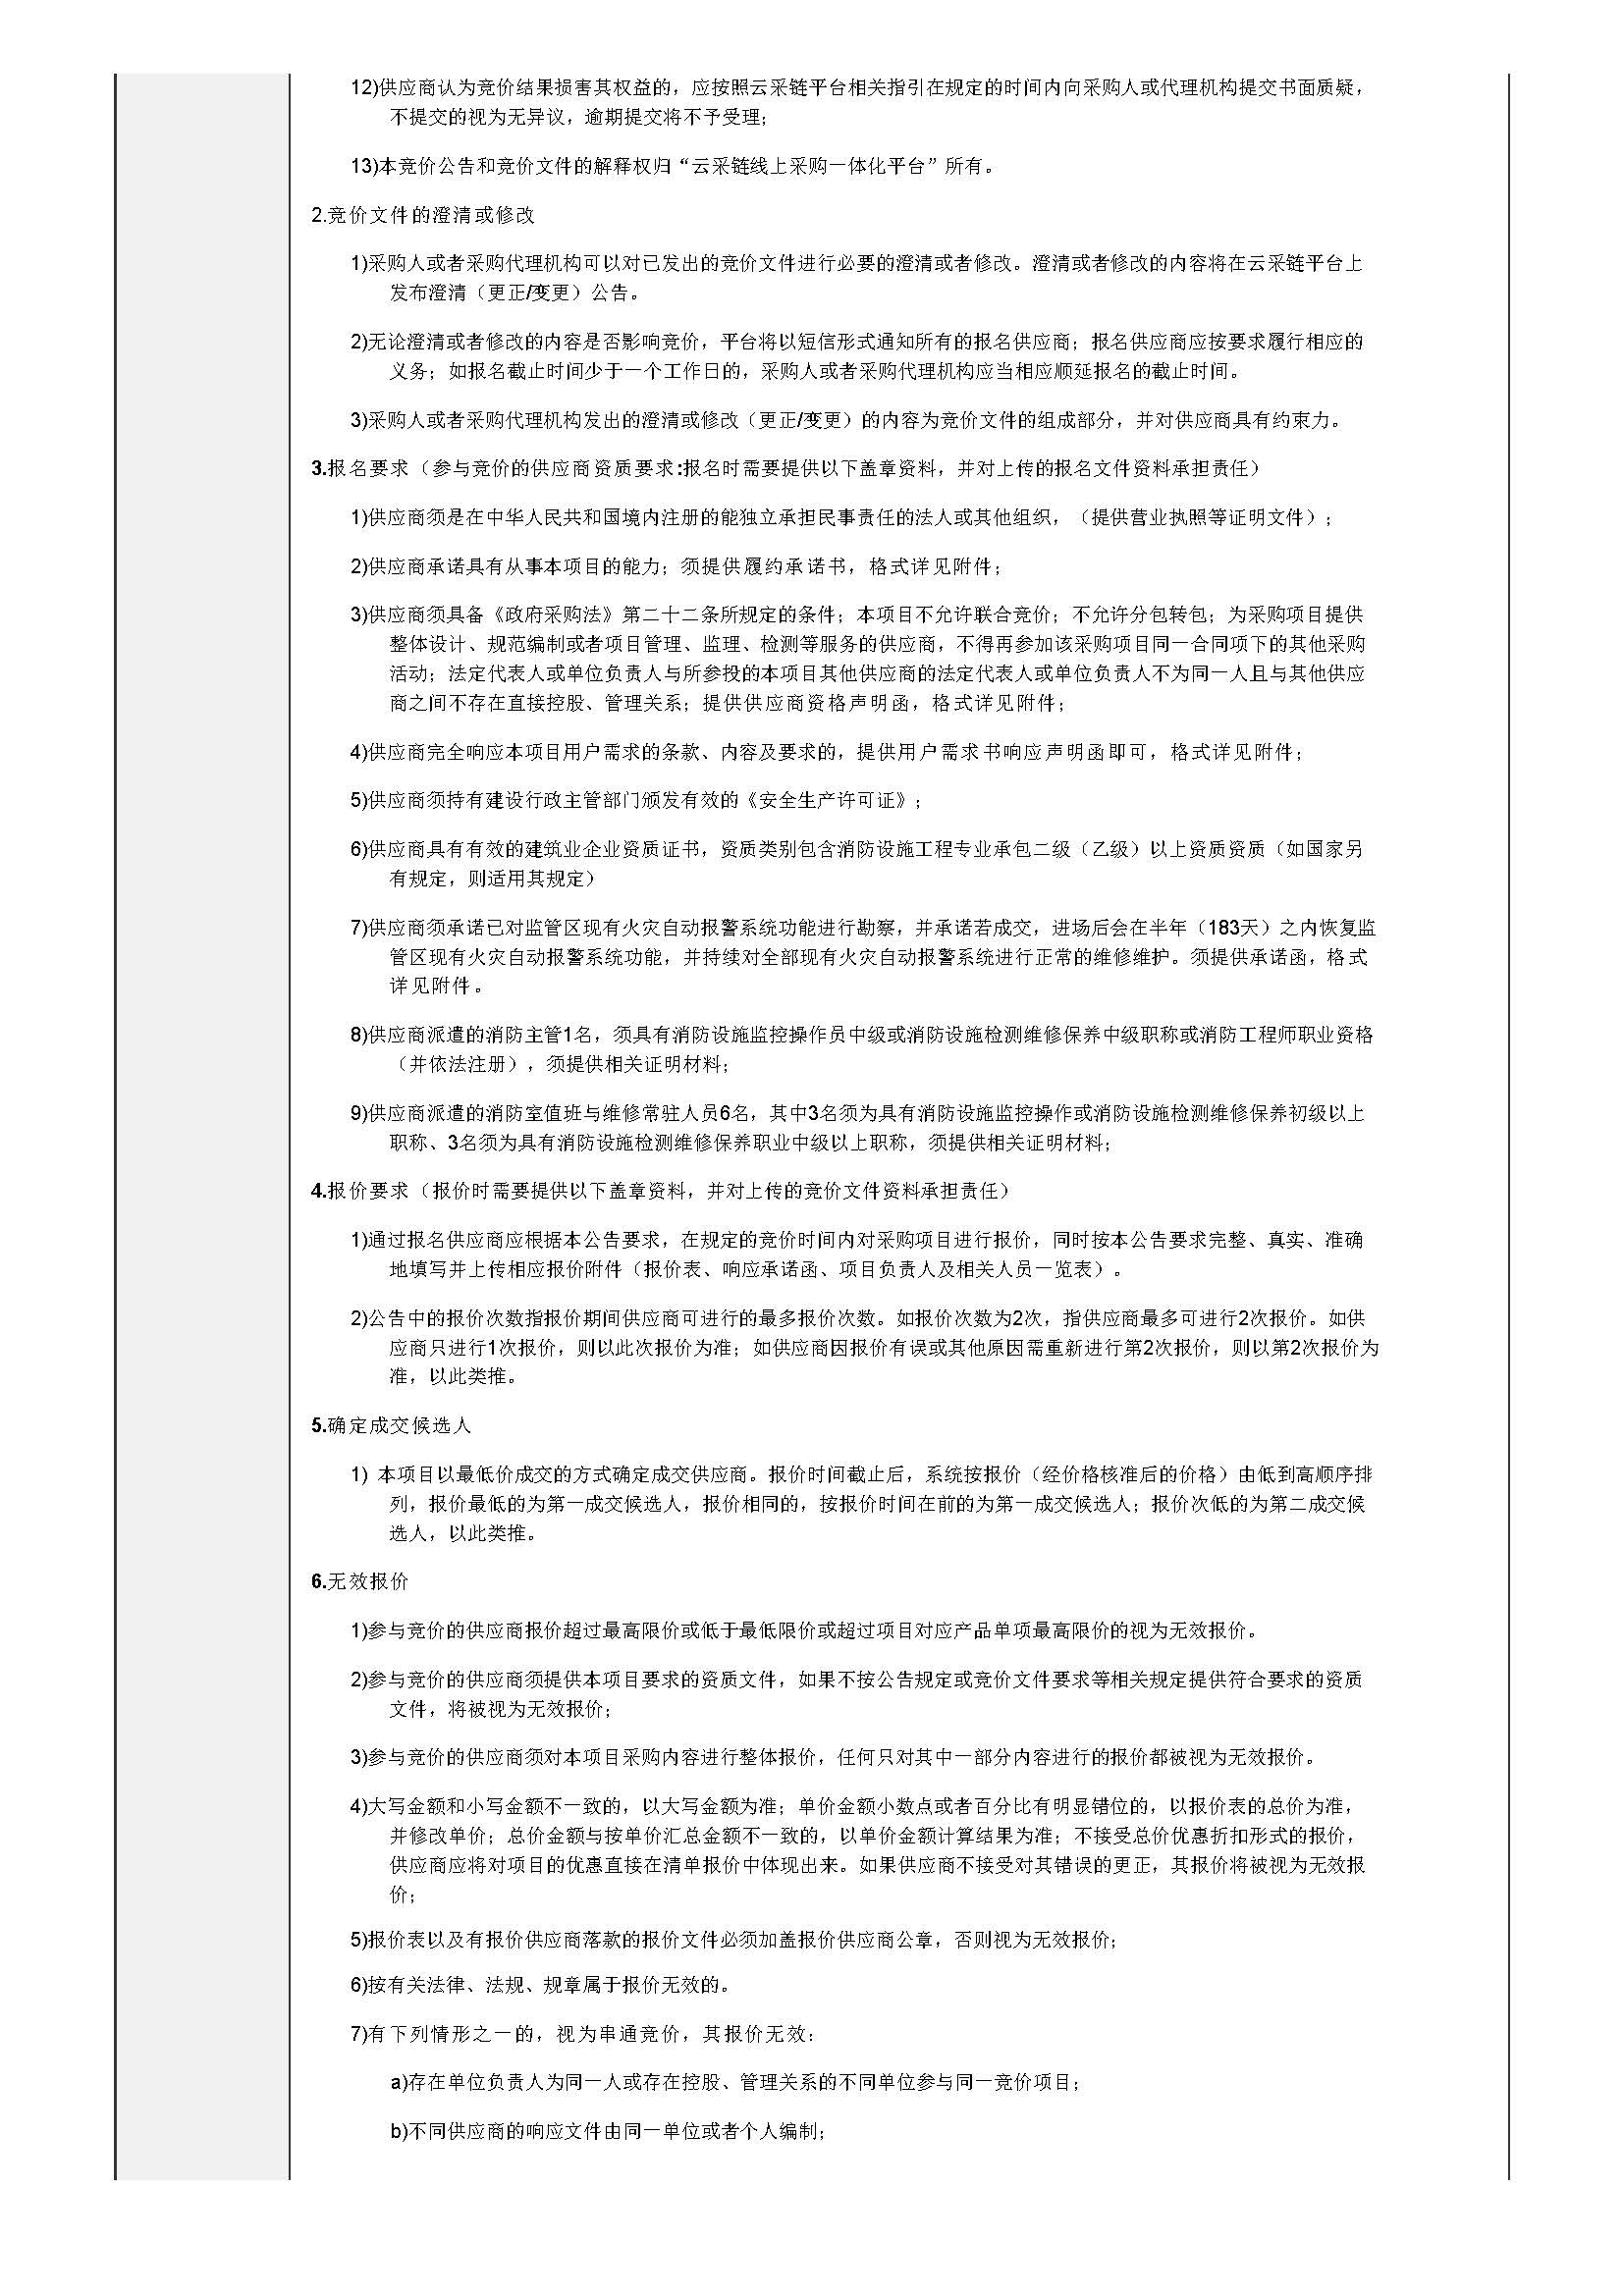 50.74广东省明康监狱消防设施设备维护管理项目（第二次竞价）竞价公告_页面_2.jpg